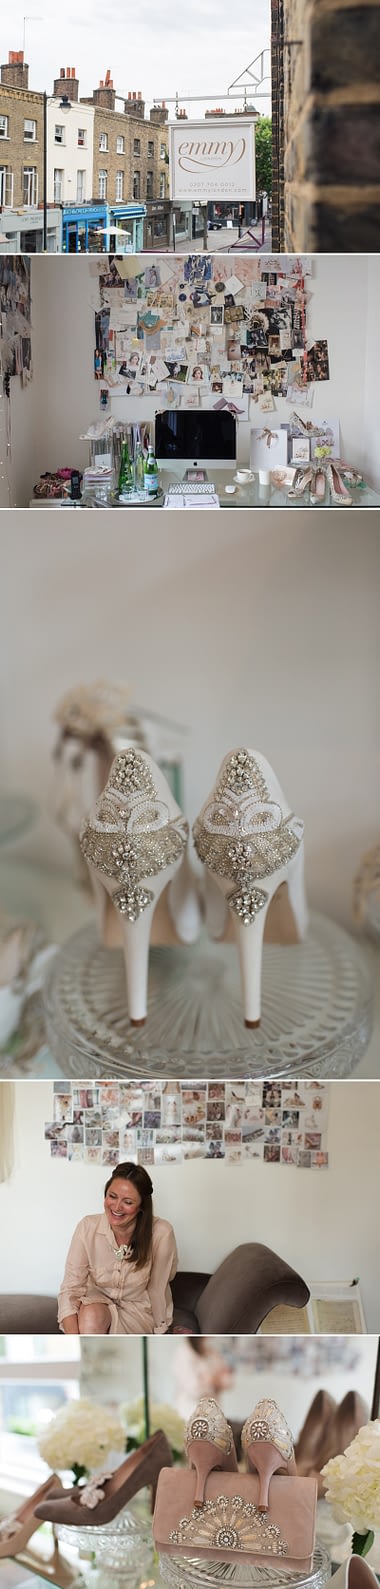 emmy wedding shoes